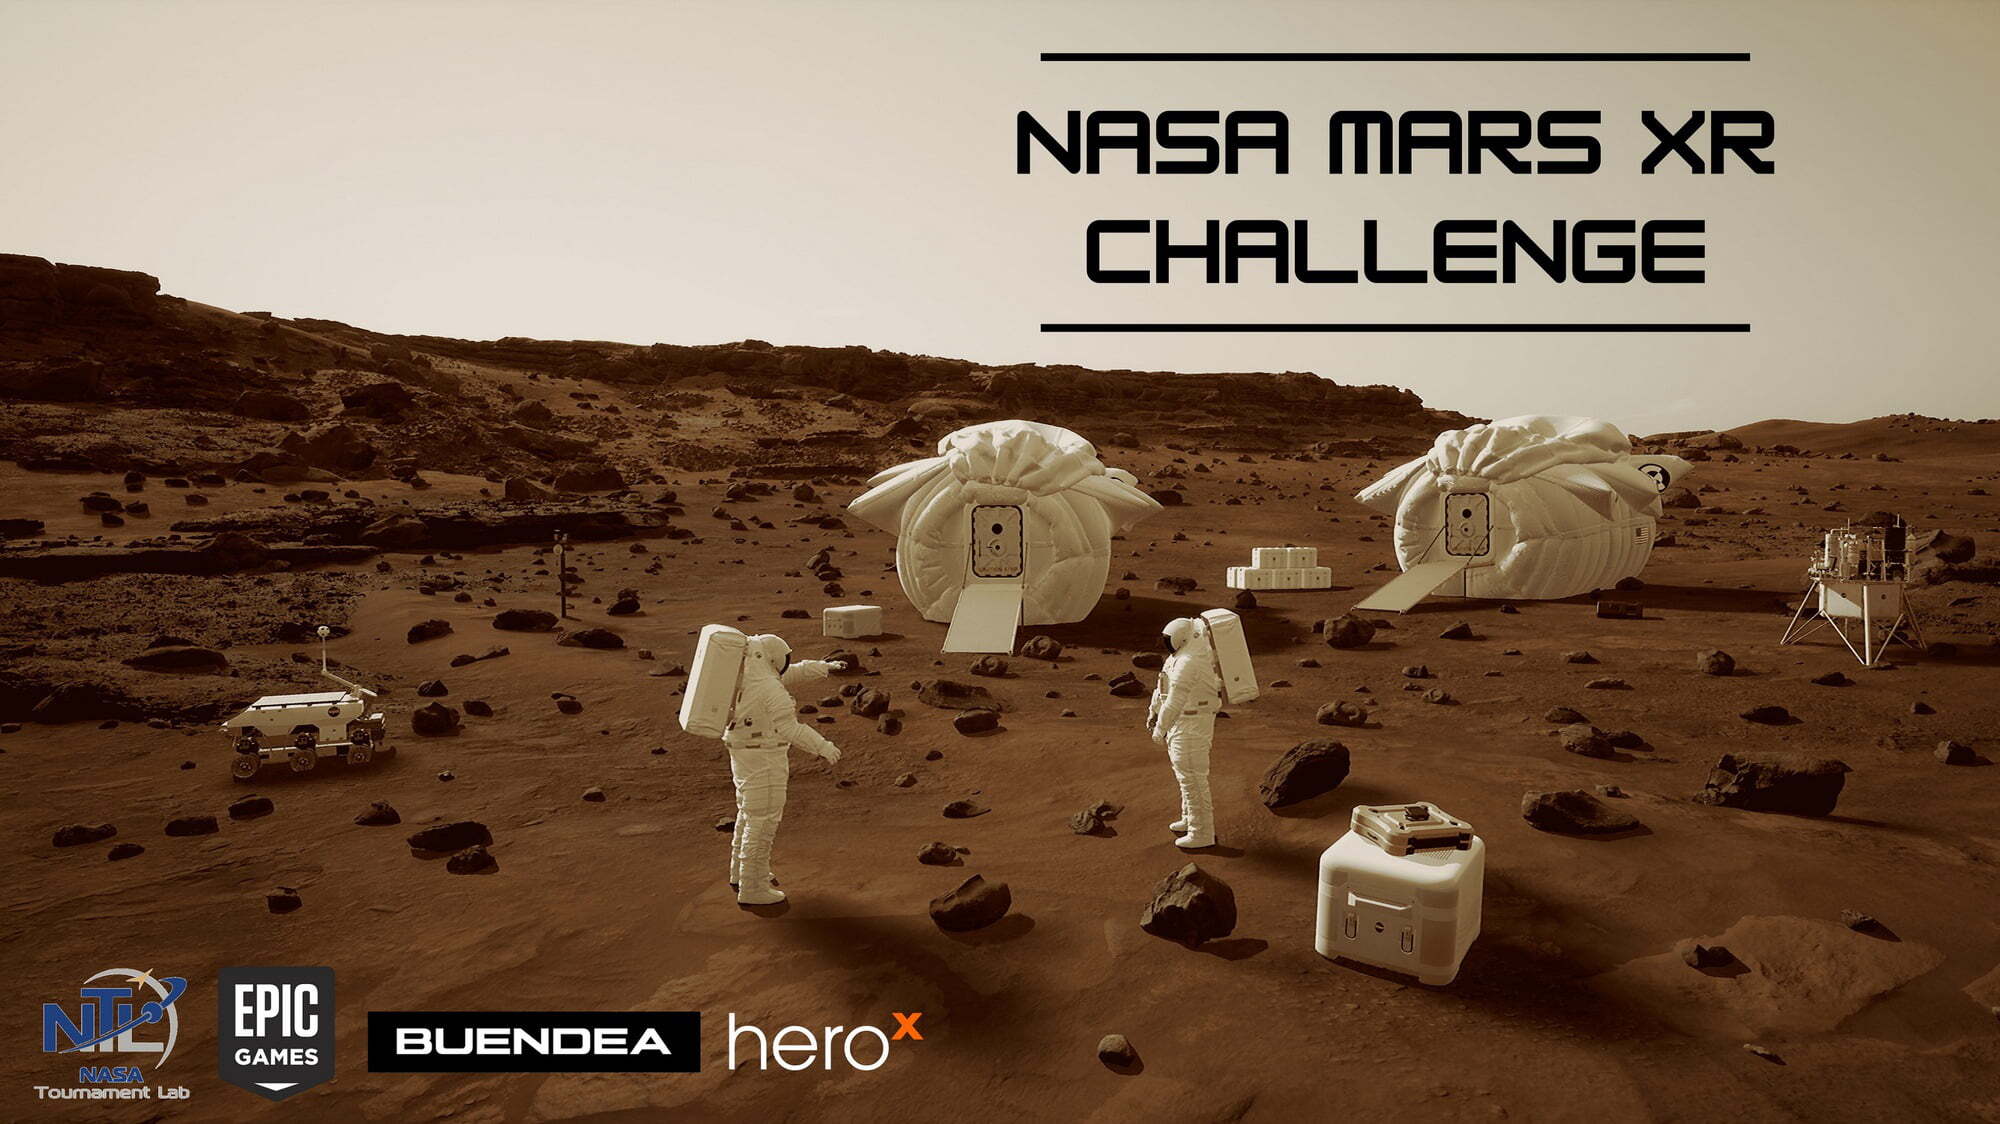 NASA hợp tác với Epic Games để xây dựng dự án metaverse trên Sao Hỏa